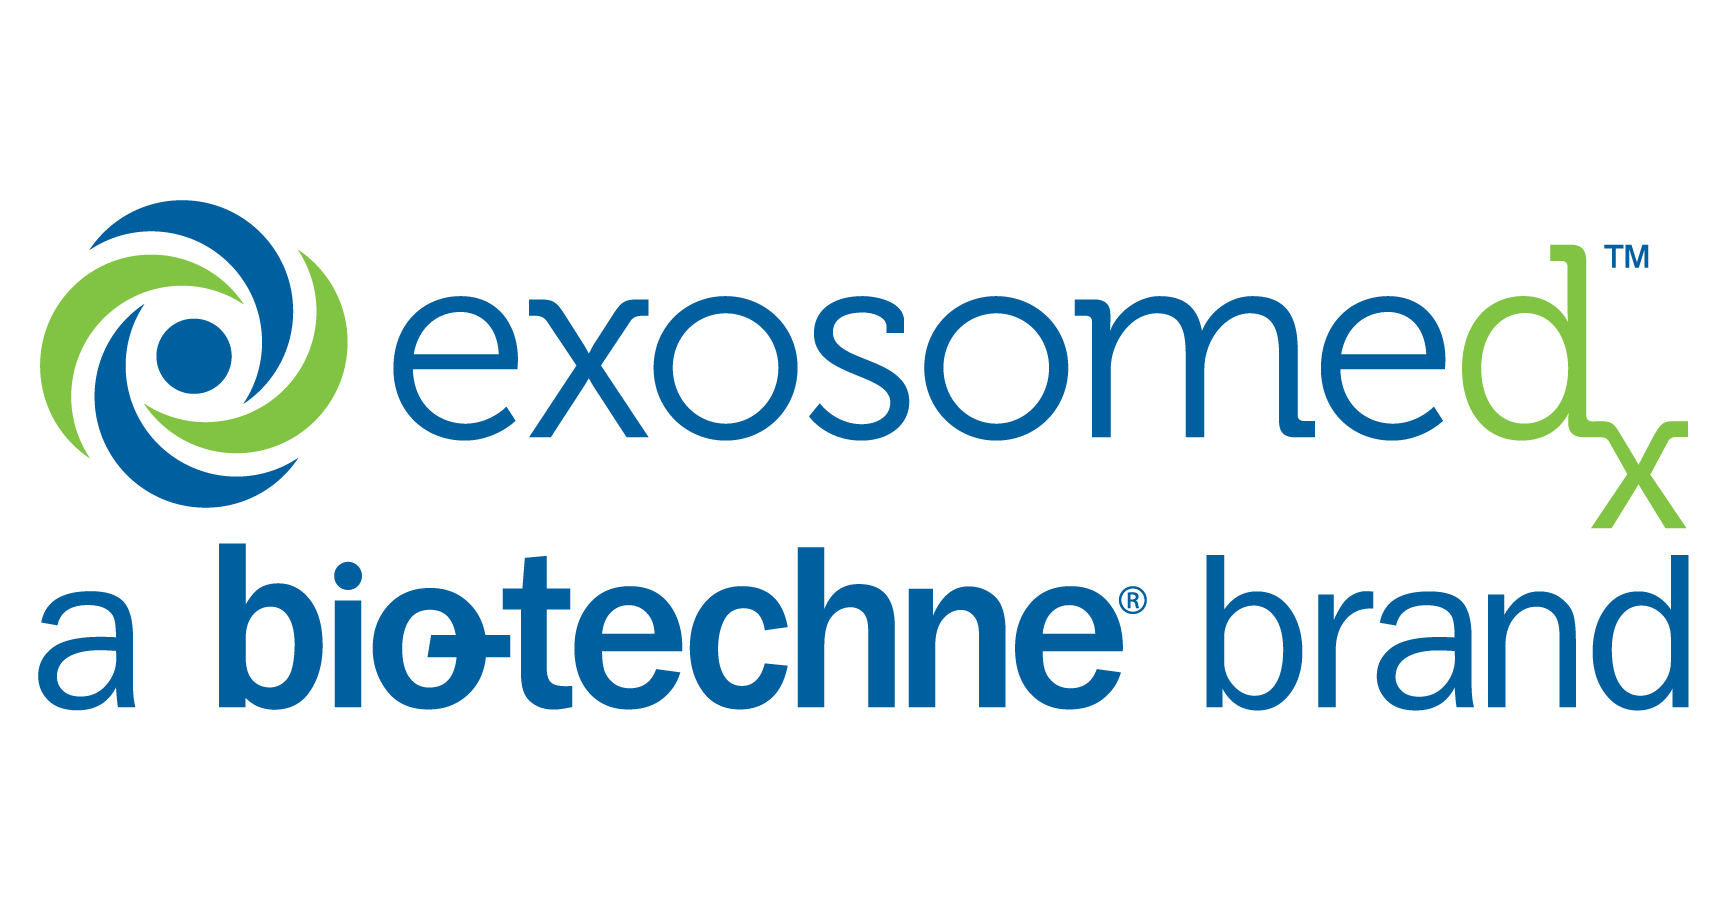 ExosomeDX